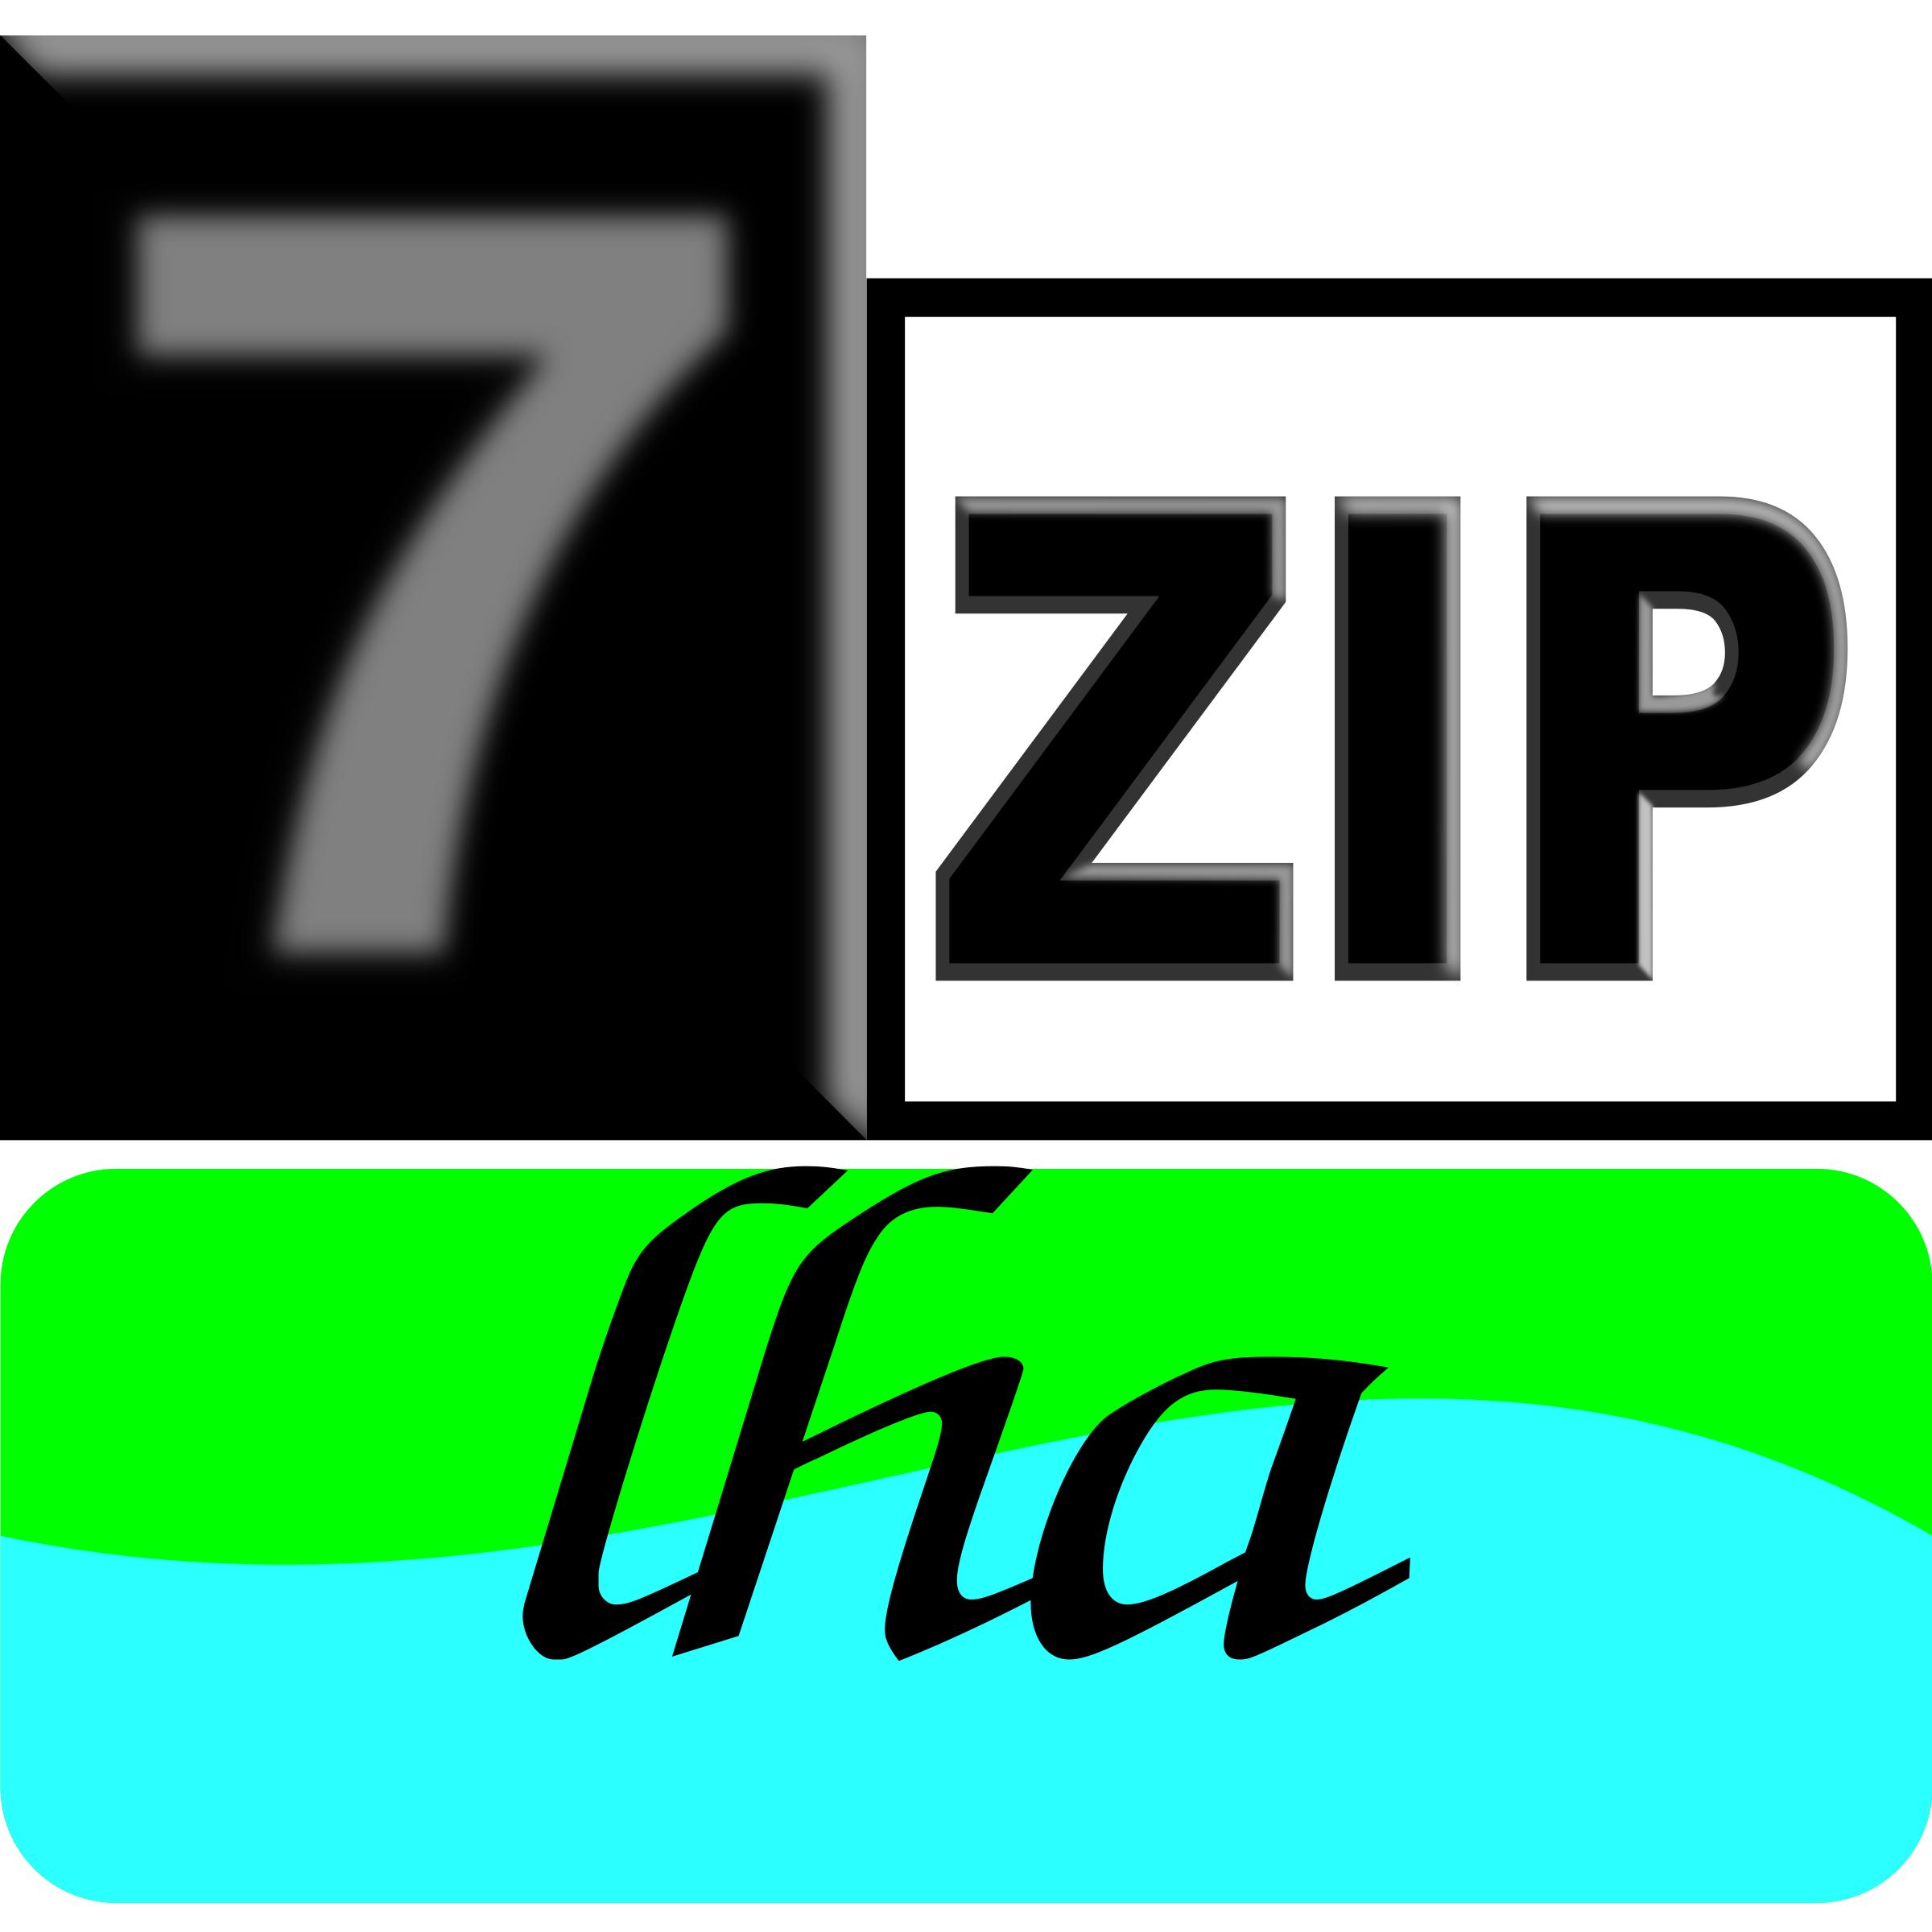 7zipClassic-lha png